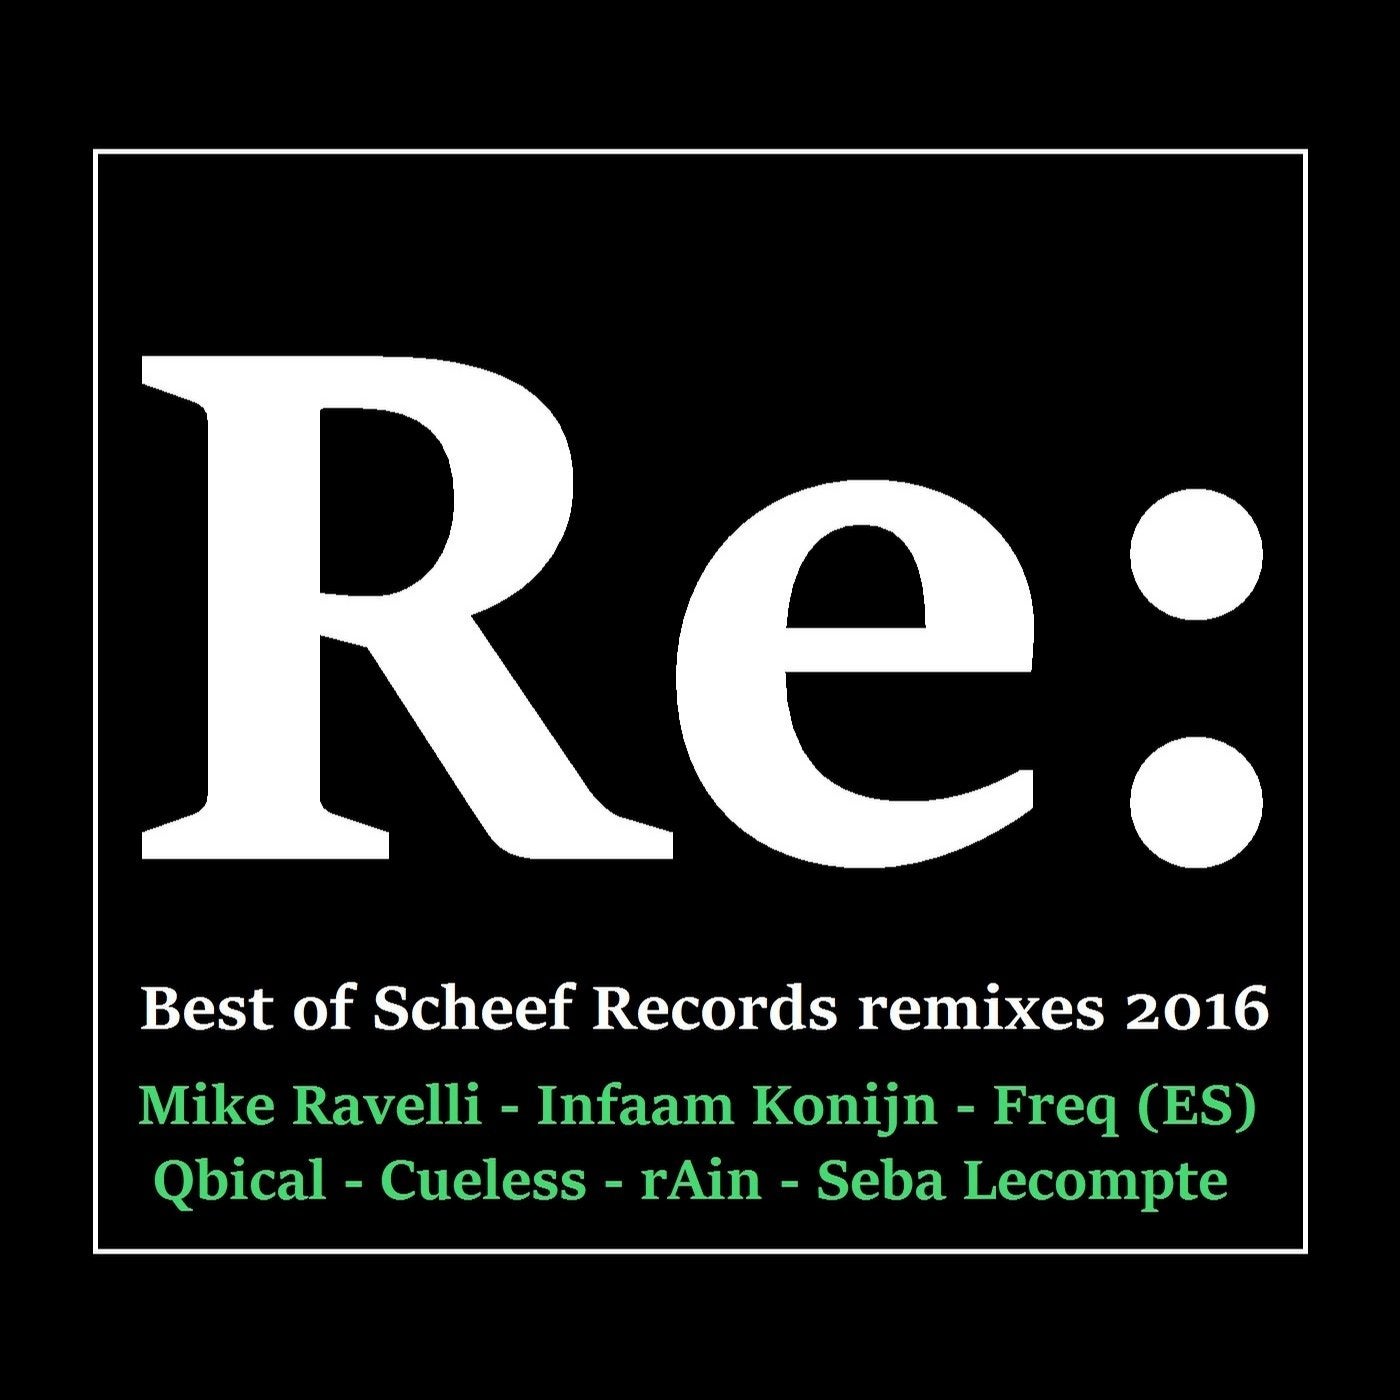 Best of Scheef Records Remixes 2016